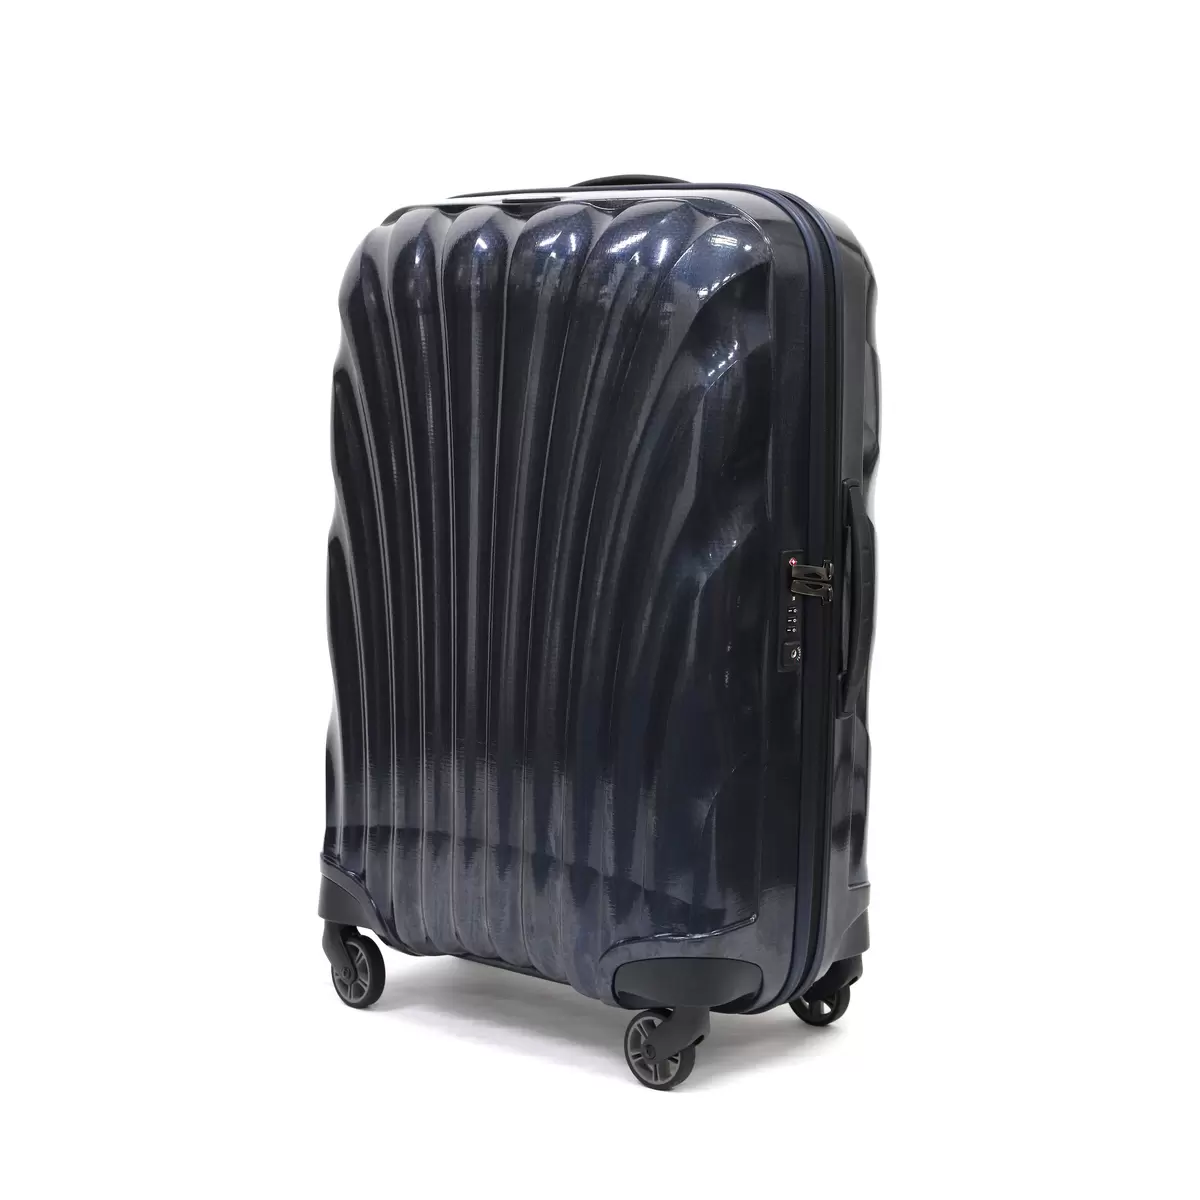 サムソナイト スーツケース コスモライト 3.0 69cm 73350 ミッドナイトブルー